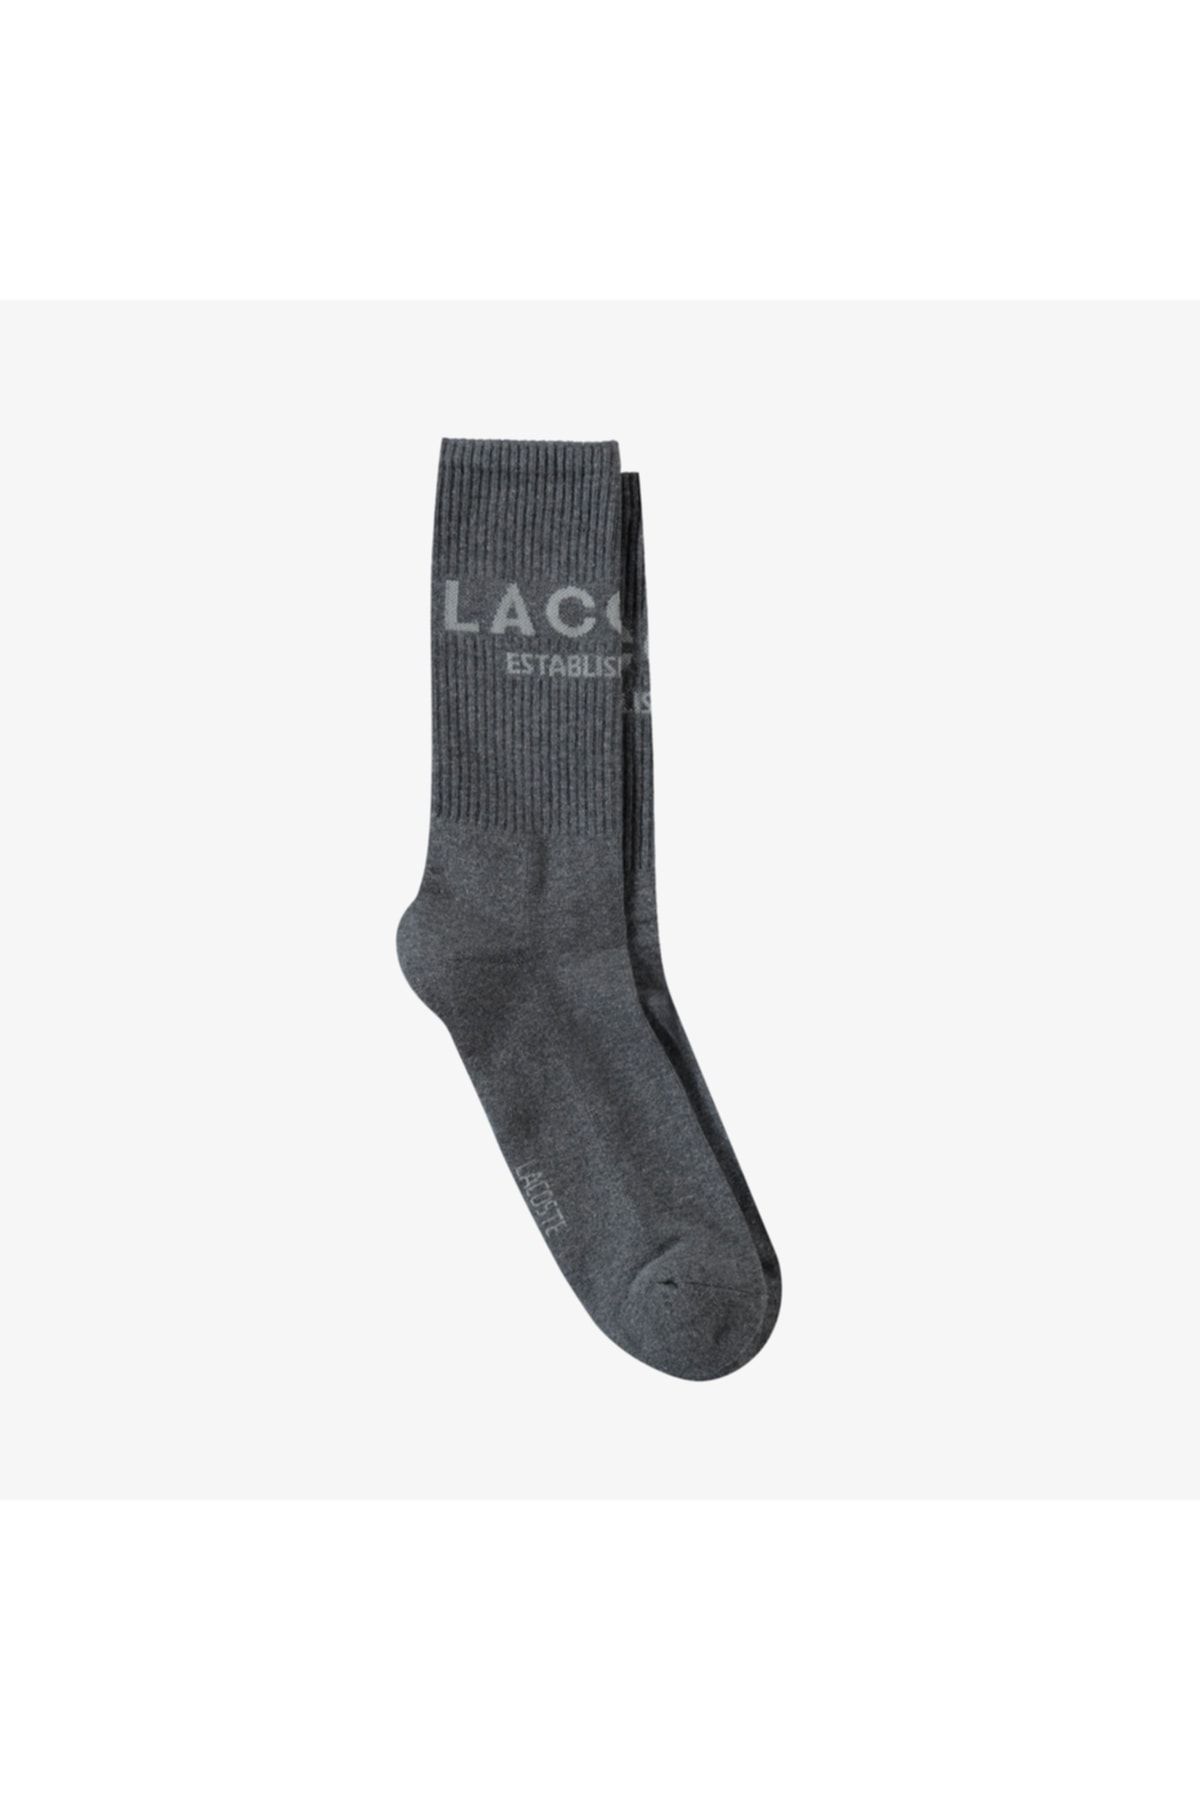 Lacoste Unisex Uzun Baskılı Koyu Gri Çorap RA0205